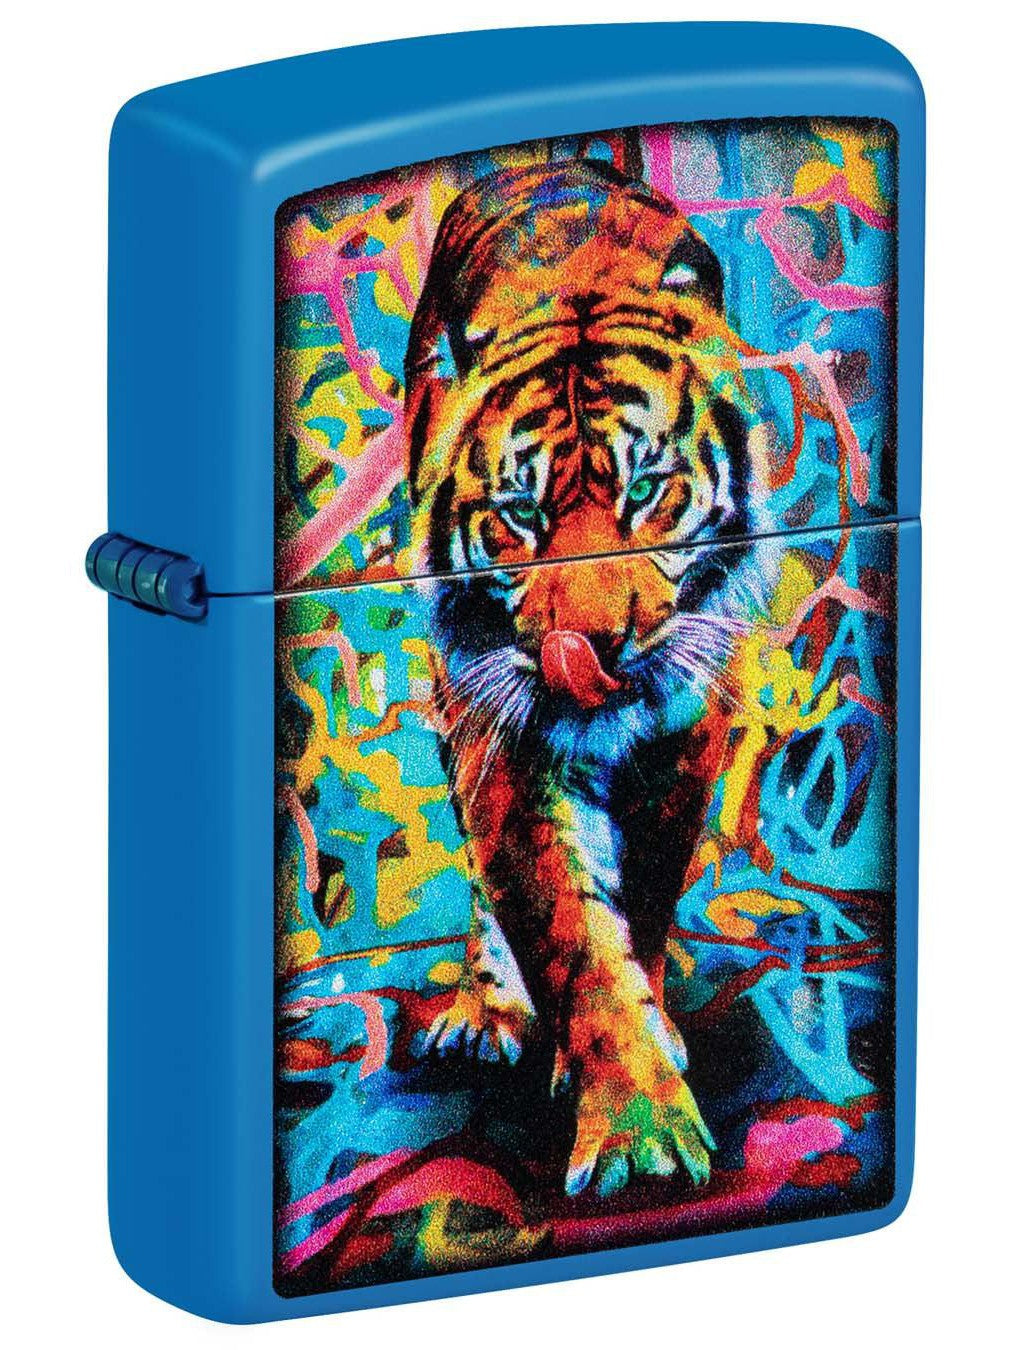 Zippo Lighter: Painted Tiger - Sky Blue Matte 48855